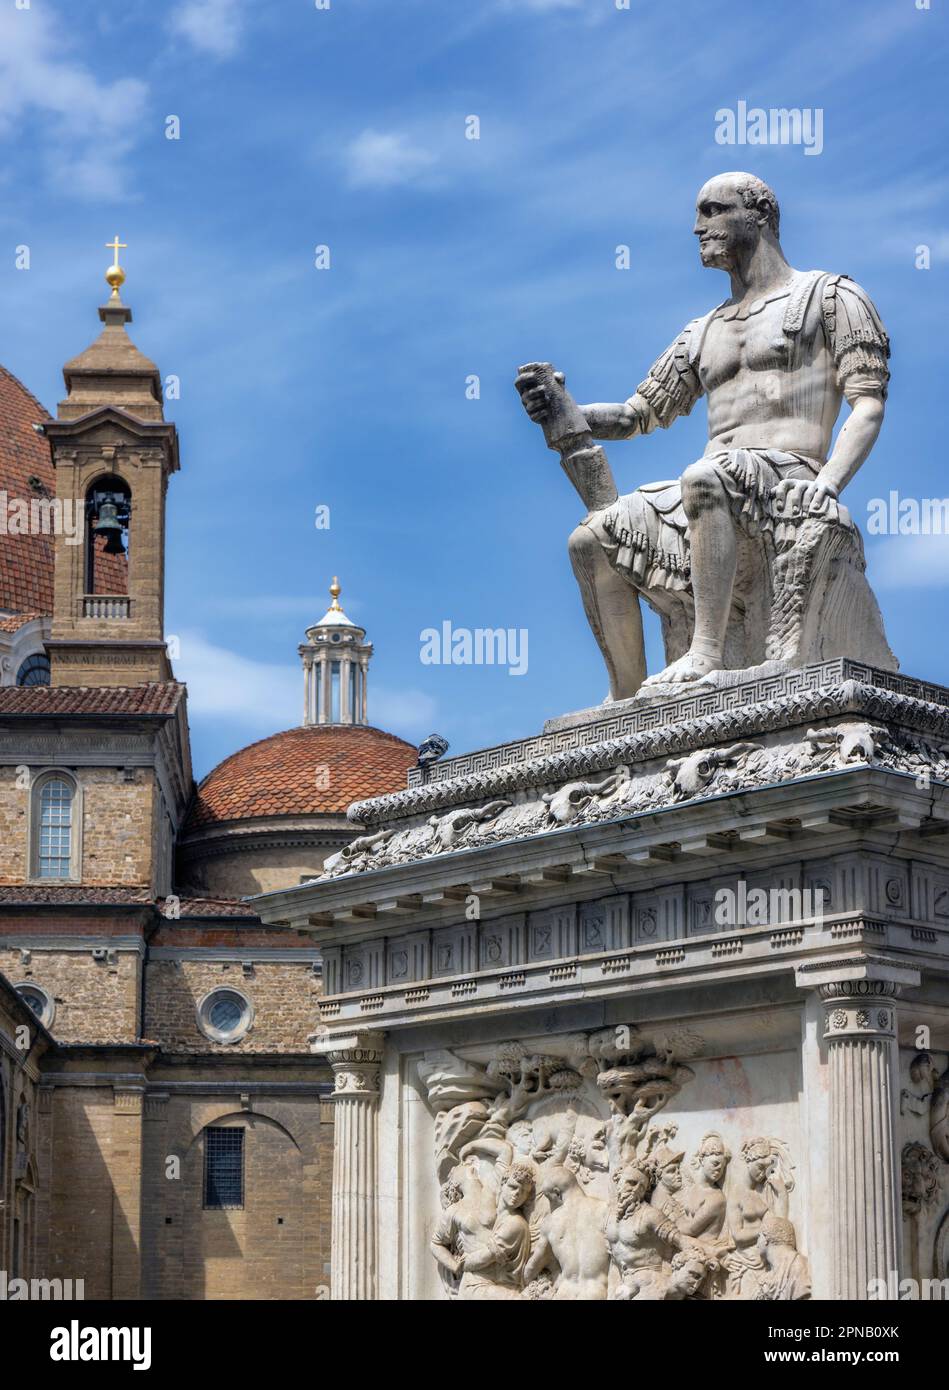 Denkmal für Lodovico de' Medici, bekannt als Giovanni delle Bande Nere, auf der Piazza San Lorenzo, Florenz, Toskana, Italien. Das italienische renaissance-mär Stockfoto